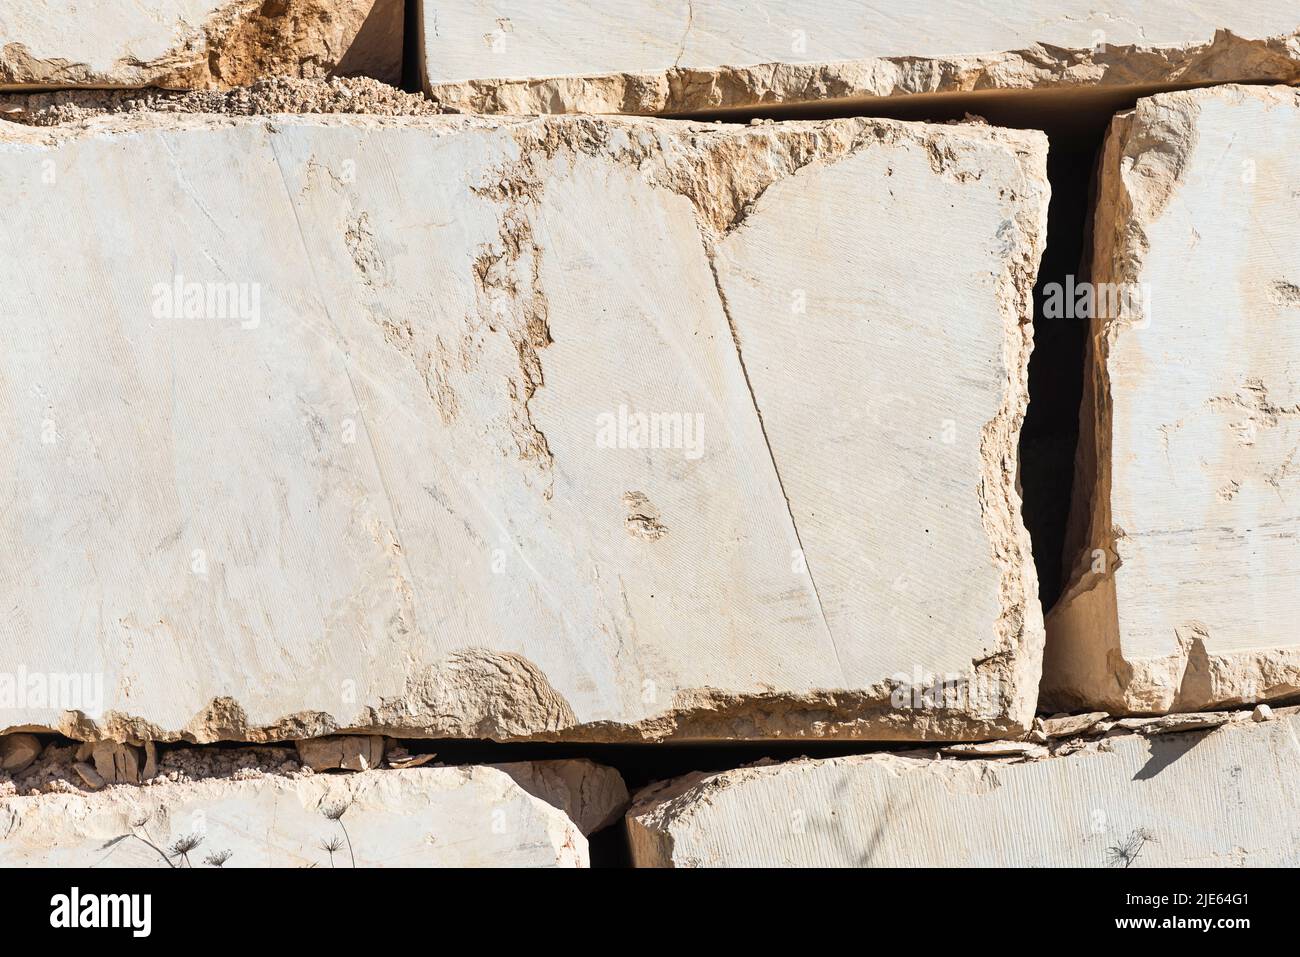 Superficies de bloques de mármol angular apilados en una cantera cerca de Orosei en la costa este de Cerdeña, Baronia, Italia Foto de stock